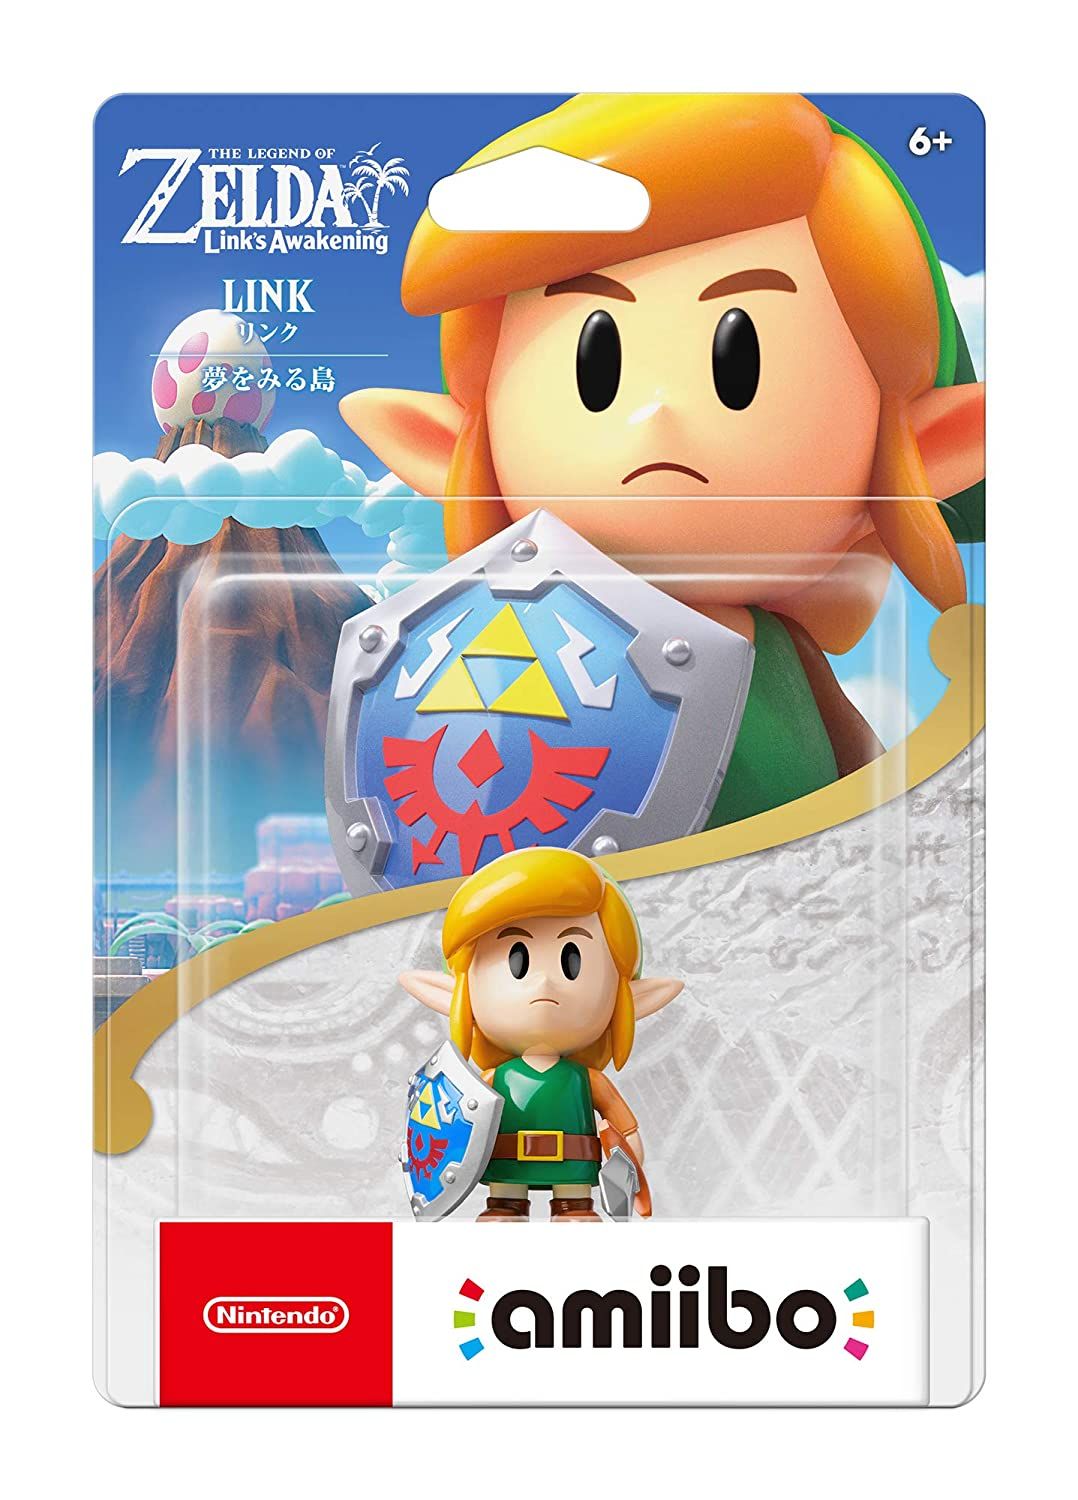 Nintendo Amiibo - Link The Legend of Zelda Link's Awakening Series 1